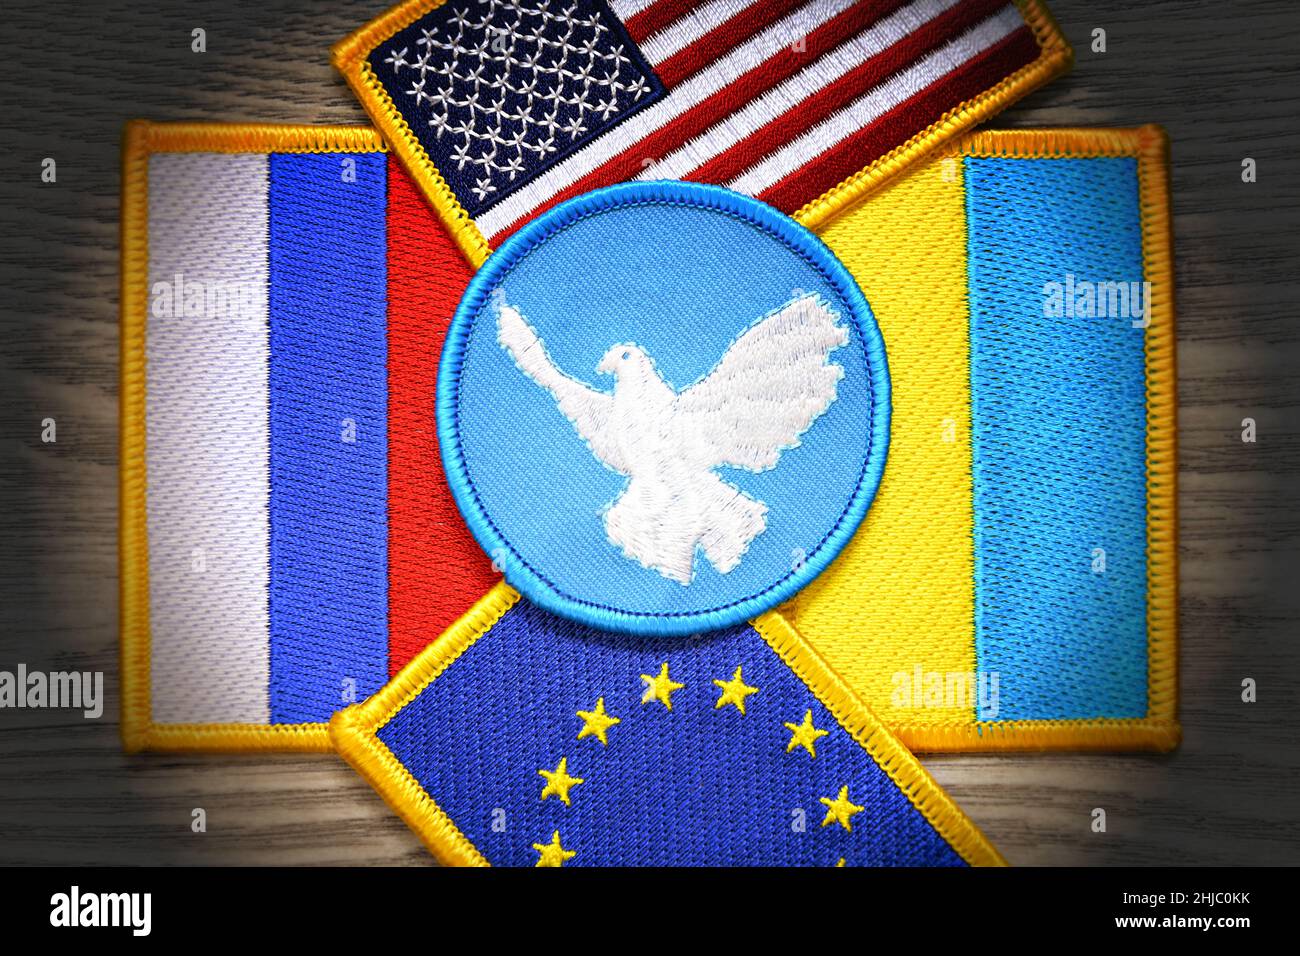 Colomba di pace sulle bandiere di Russia, Ucraina, Stati Uniti e UE, crisi Ucraina Foto Stock